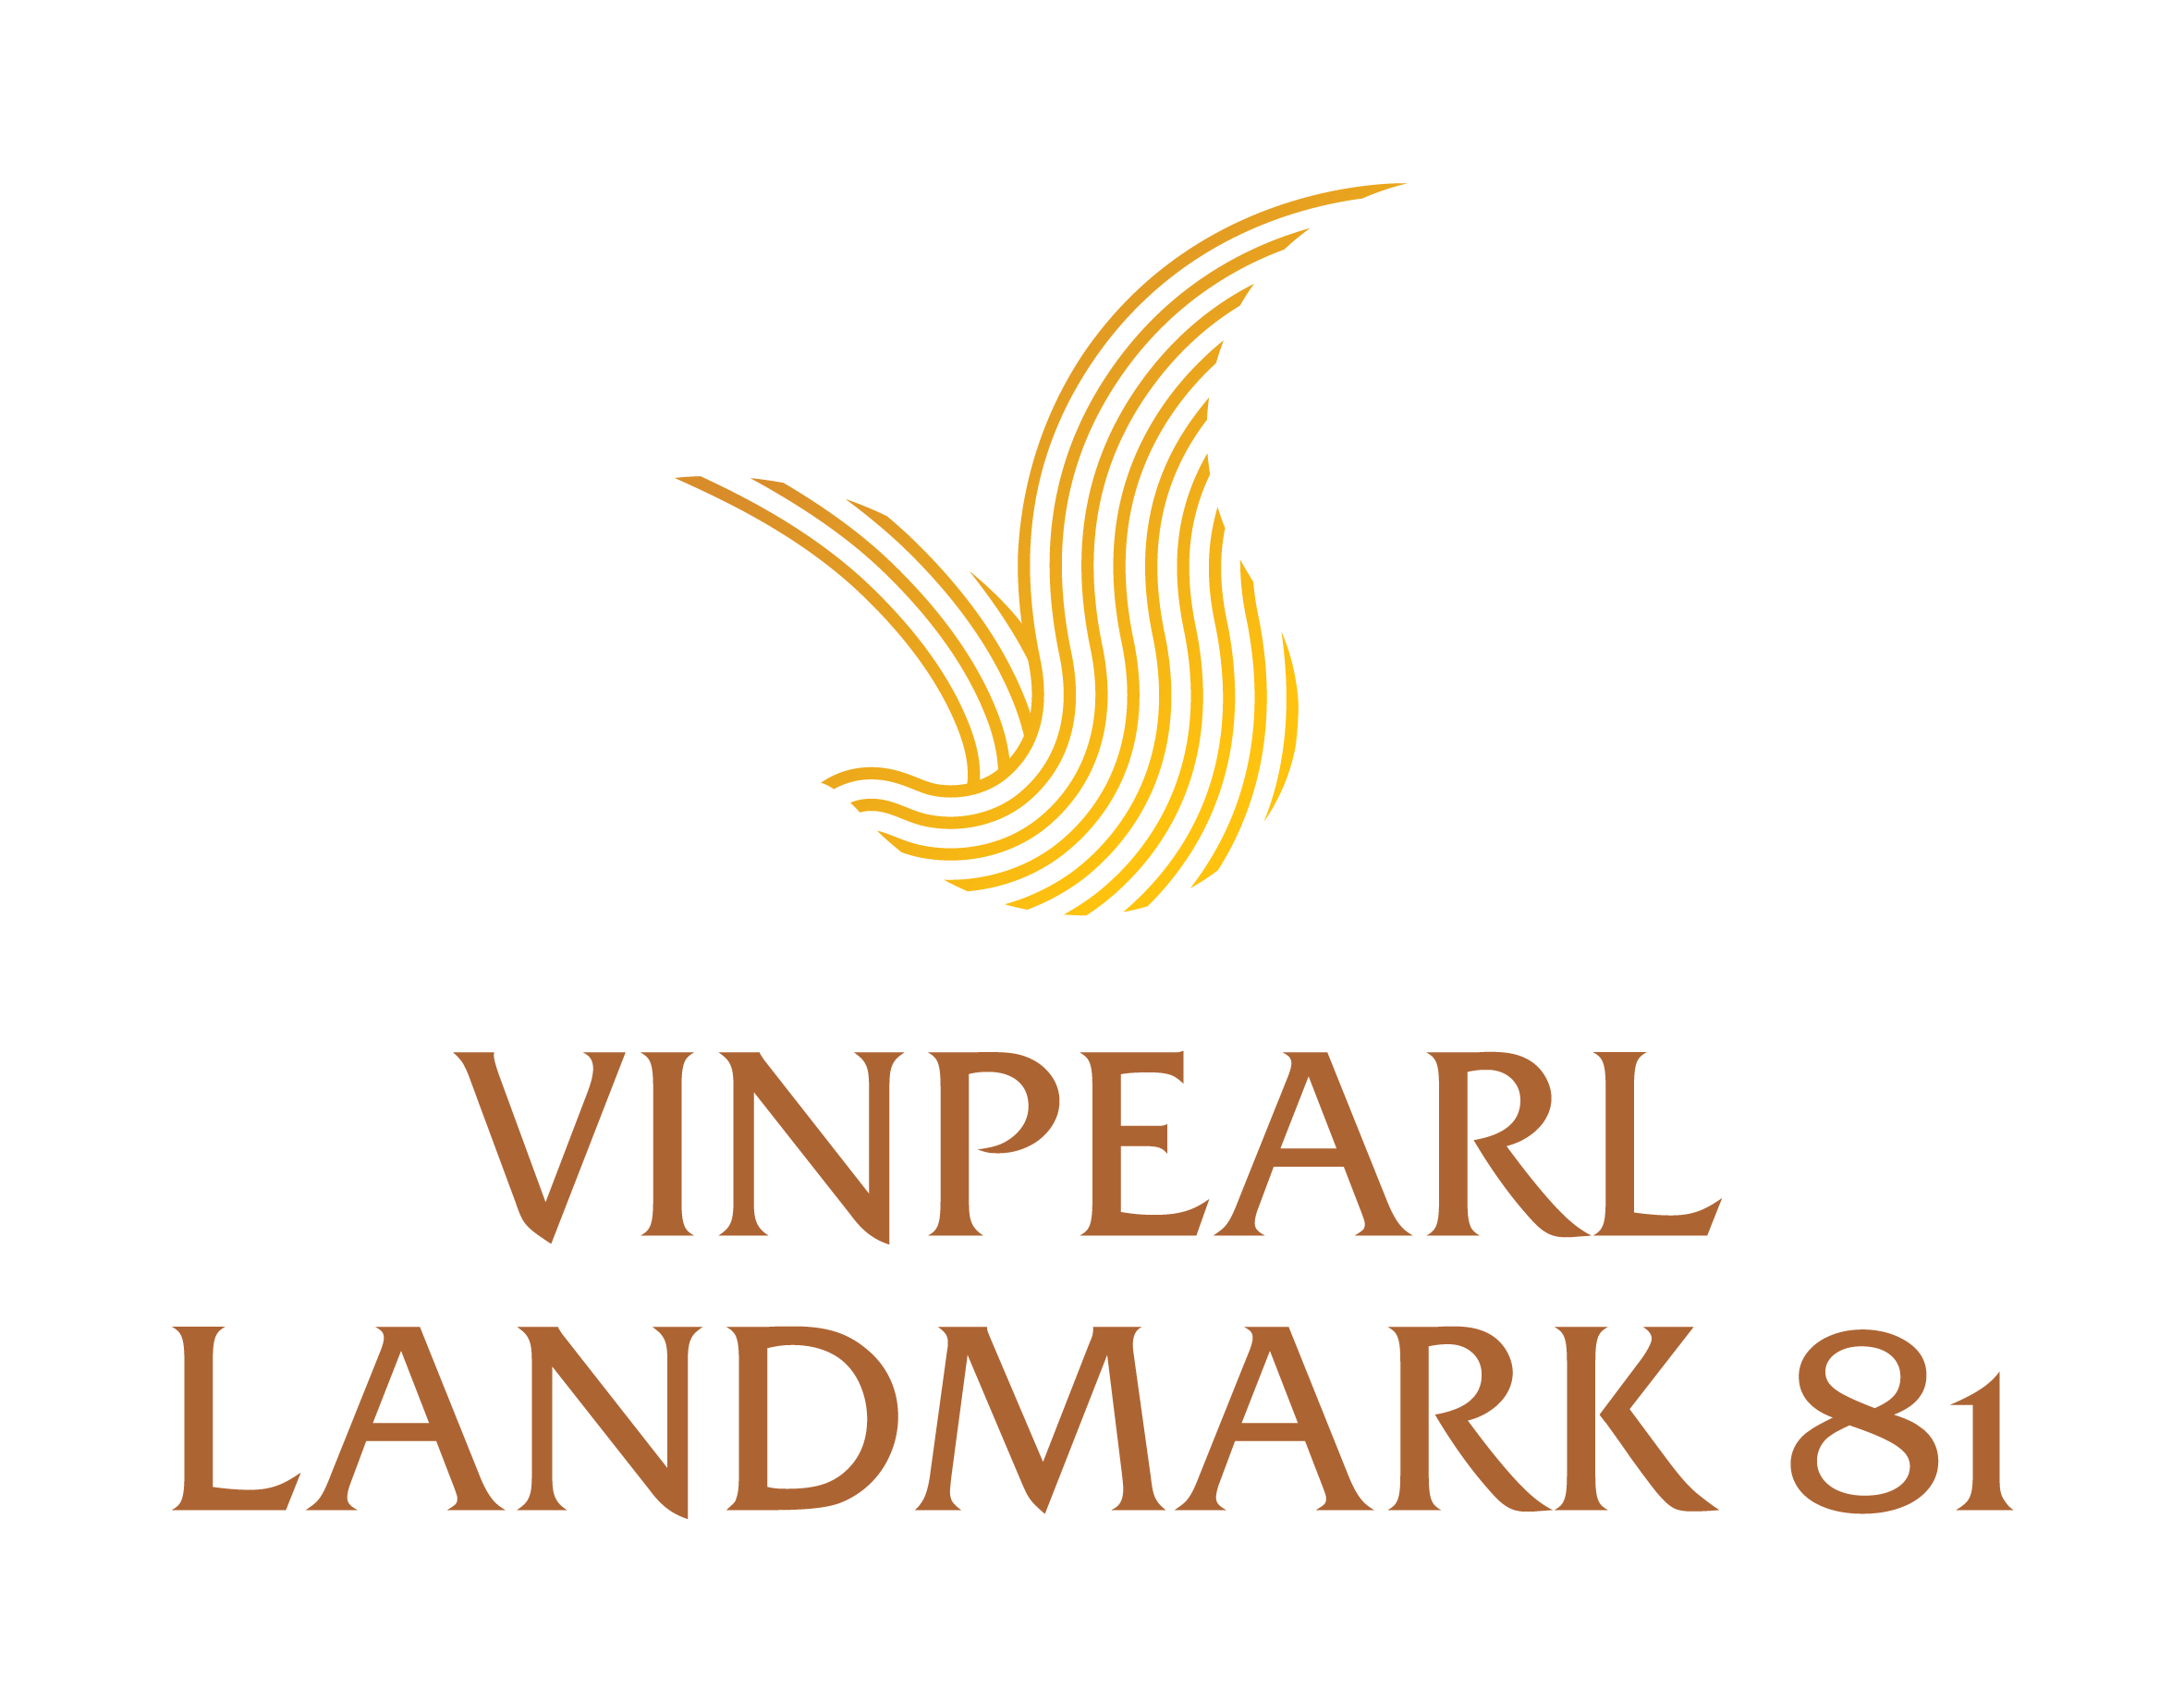 THE CLOUD (VINPEARL LANDMARK 81, AUTOGRAPH)